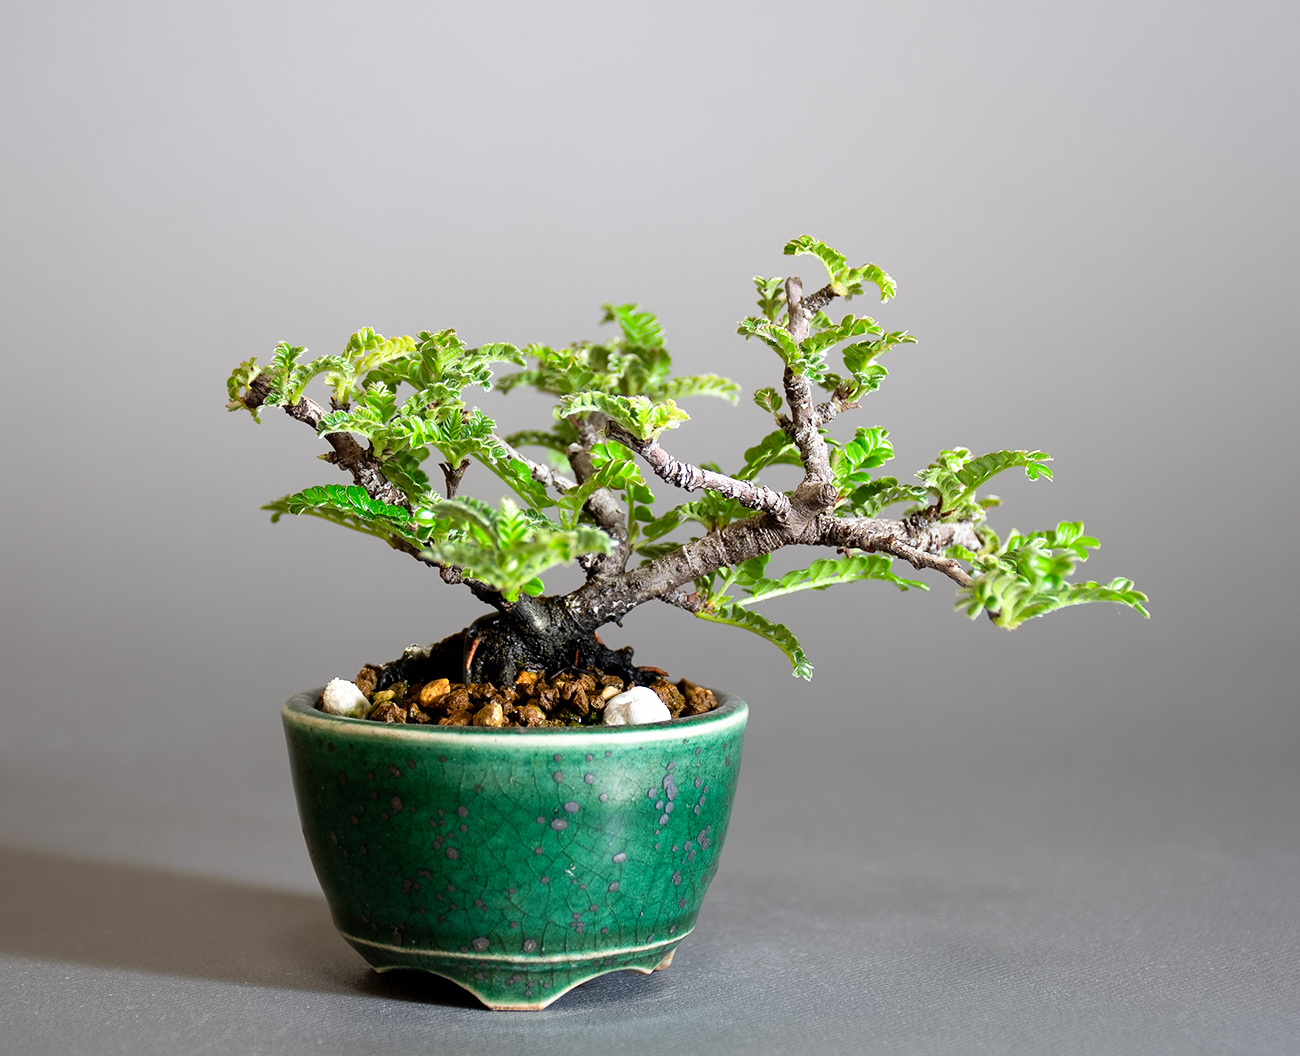 イソザンショウ-V（いそざんしょう・磯山椒）雑木盆栽の販売と育て方・作り方・Osteomeles subrotunda Hance bonsai